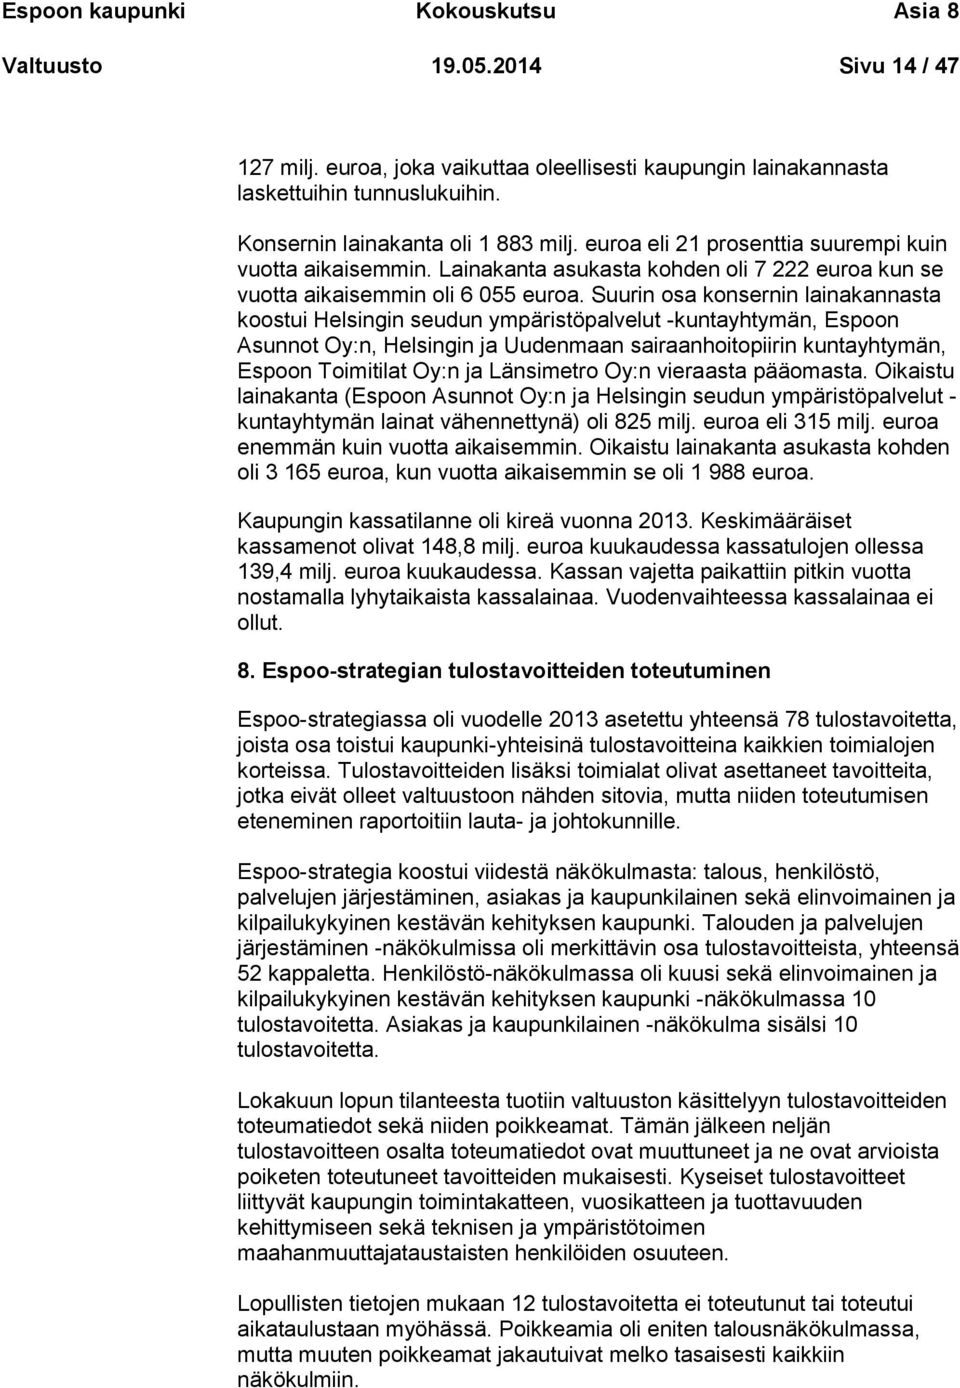 Suurin osa konsernin lainakannasta koostui Helsingin seudun ympäristöpalvelut -kuntayhtymän, Espoon Asunnot Oy:n, Helsingin ja Uudenmaan sairaanhoitopiirin kuntayhtymän, Espoon Toimitilat Oy:n ja